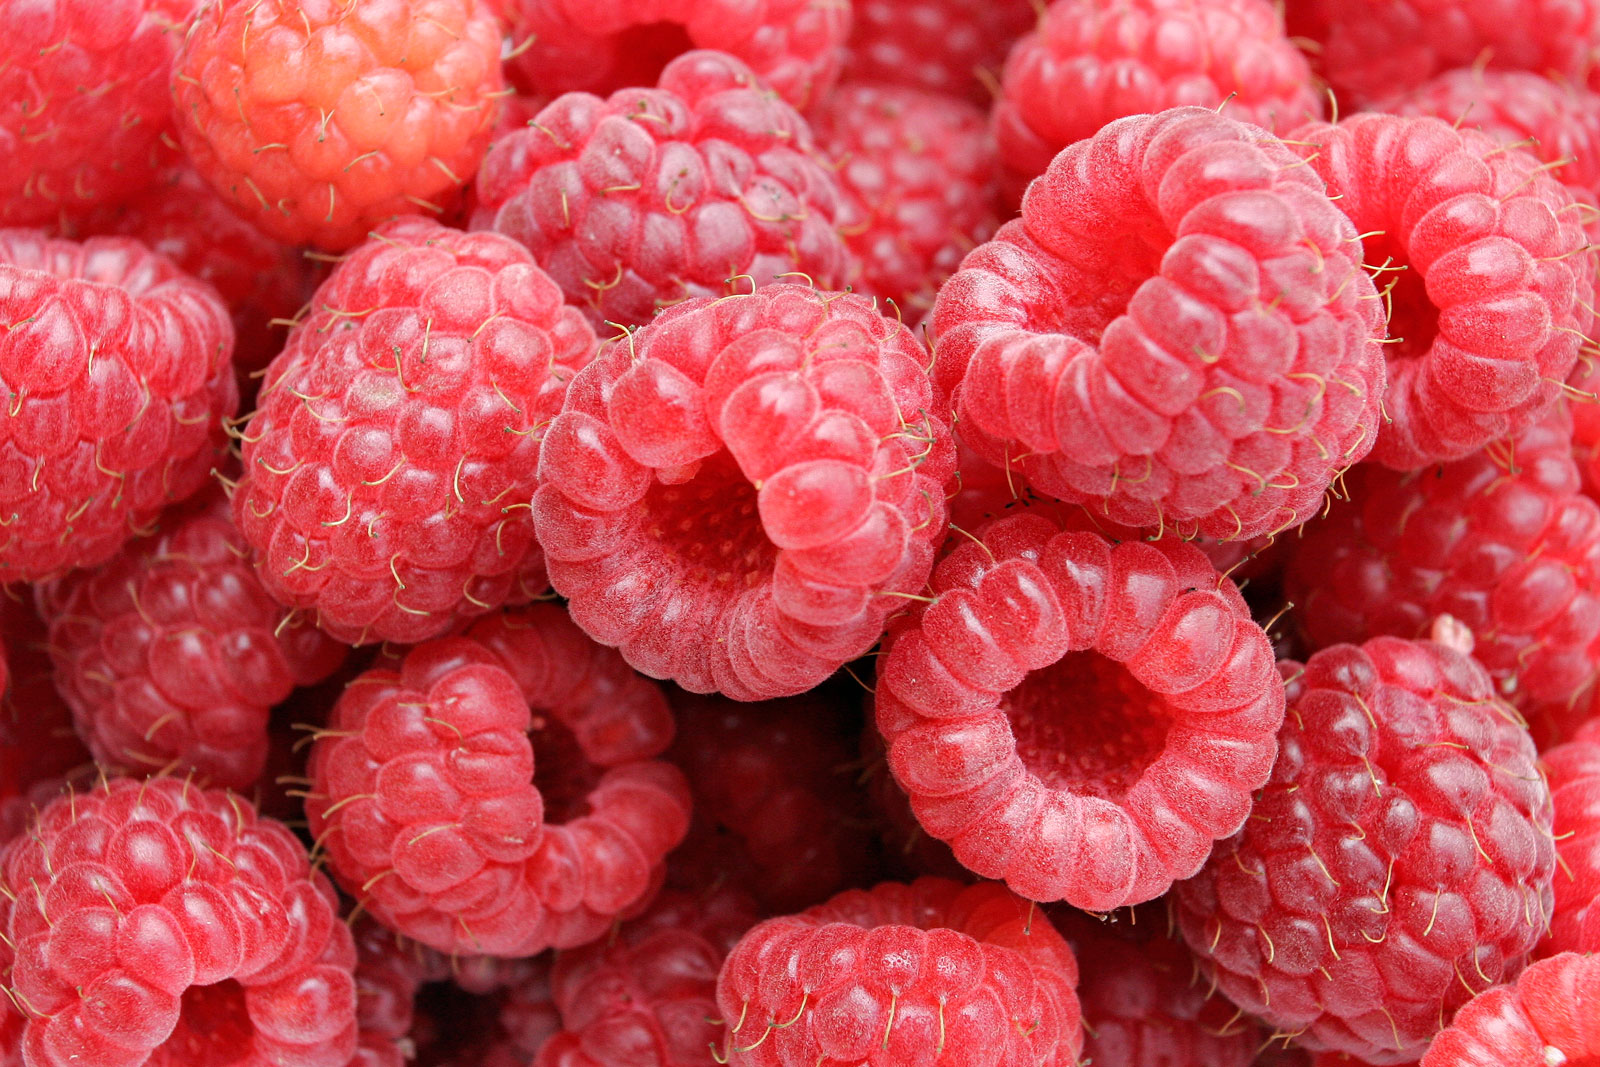 Raspberries decrease postprandial blood sugar in Type 2 Diabetes, finds study